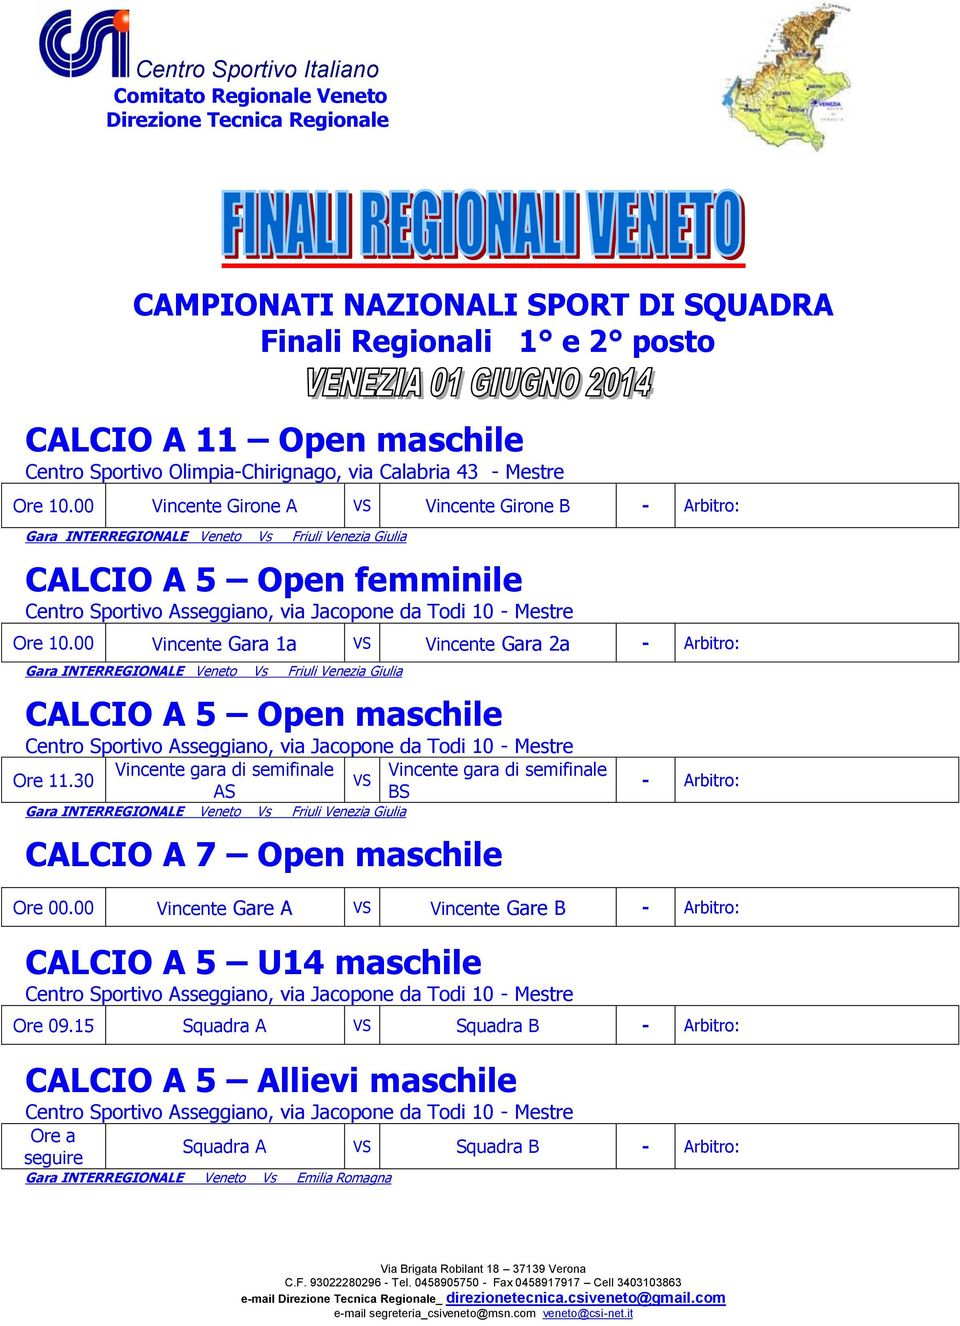 00 Vincente Gara 1a Vincente Gara 2a CALCIO A 5 Open maschile Ore 11.30 CALCIO A 7 Open maschile Ore 00.